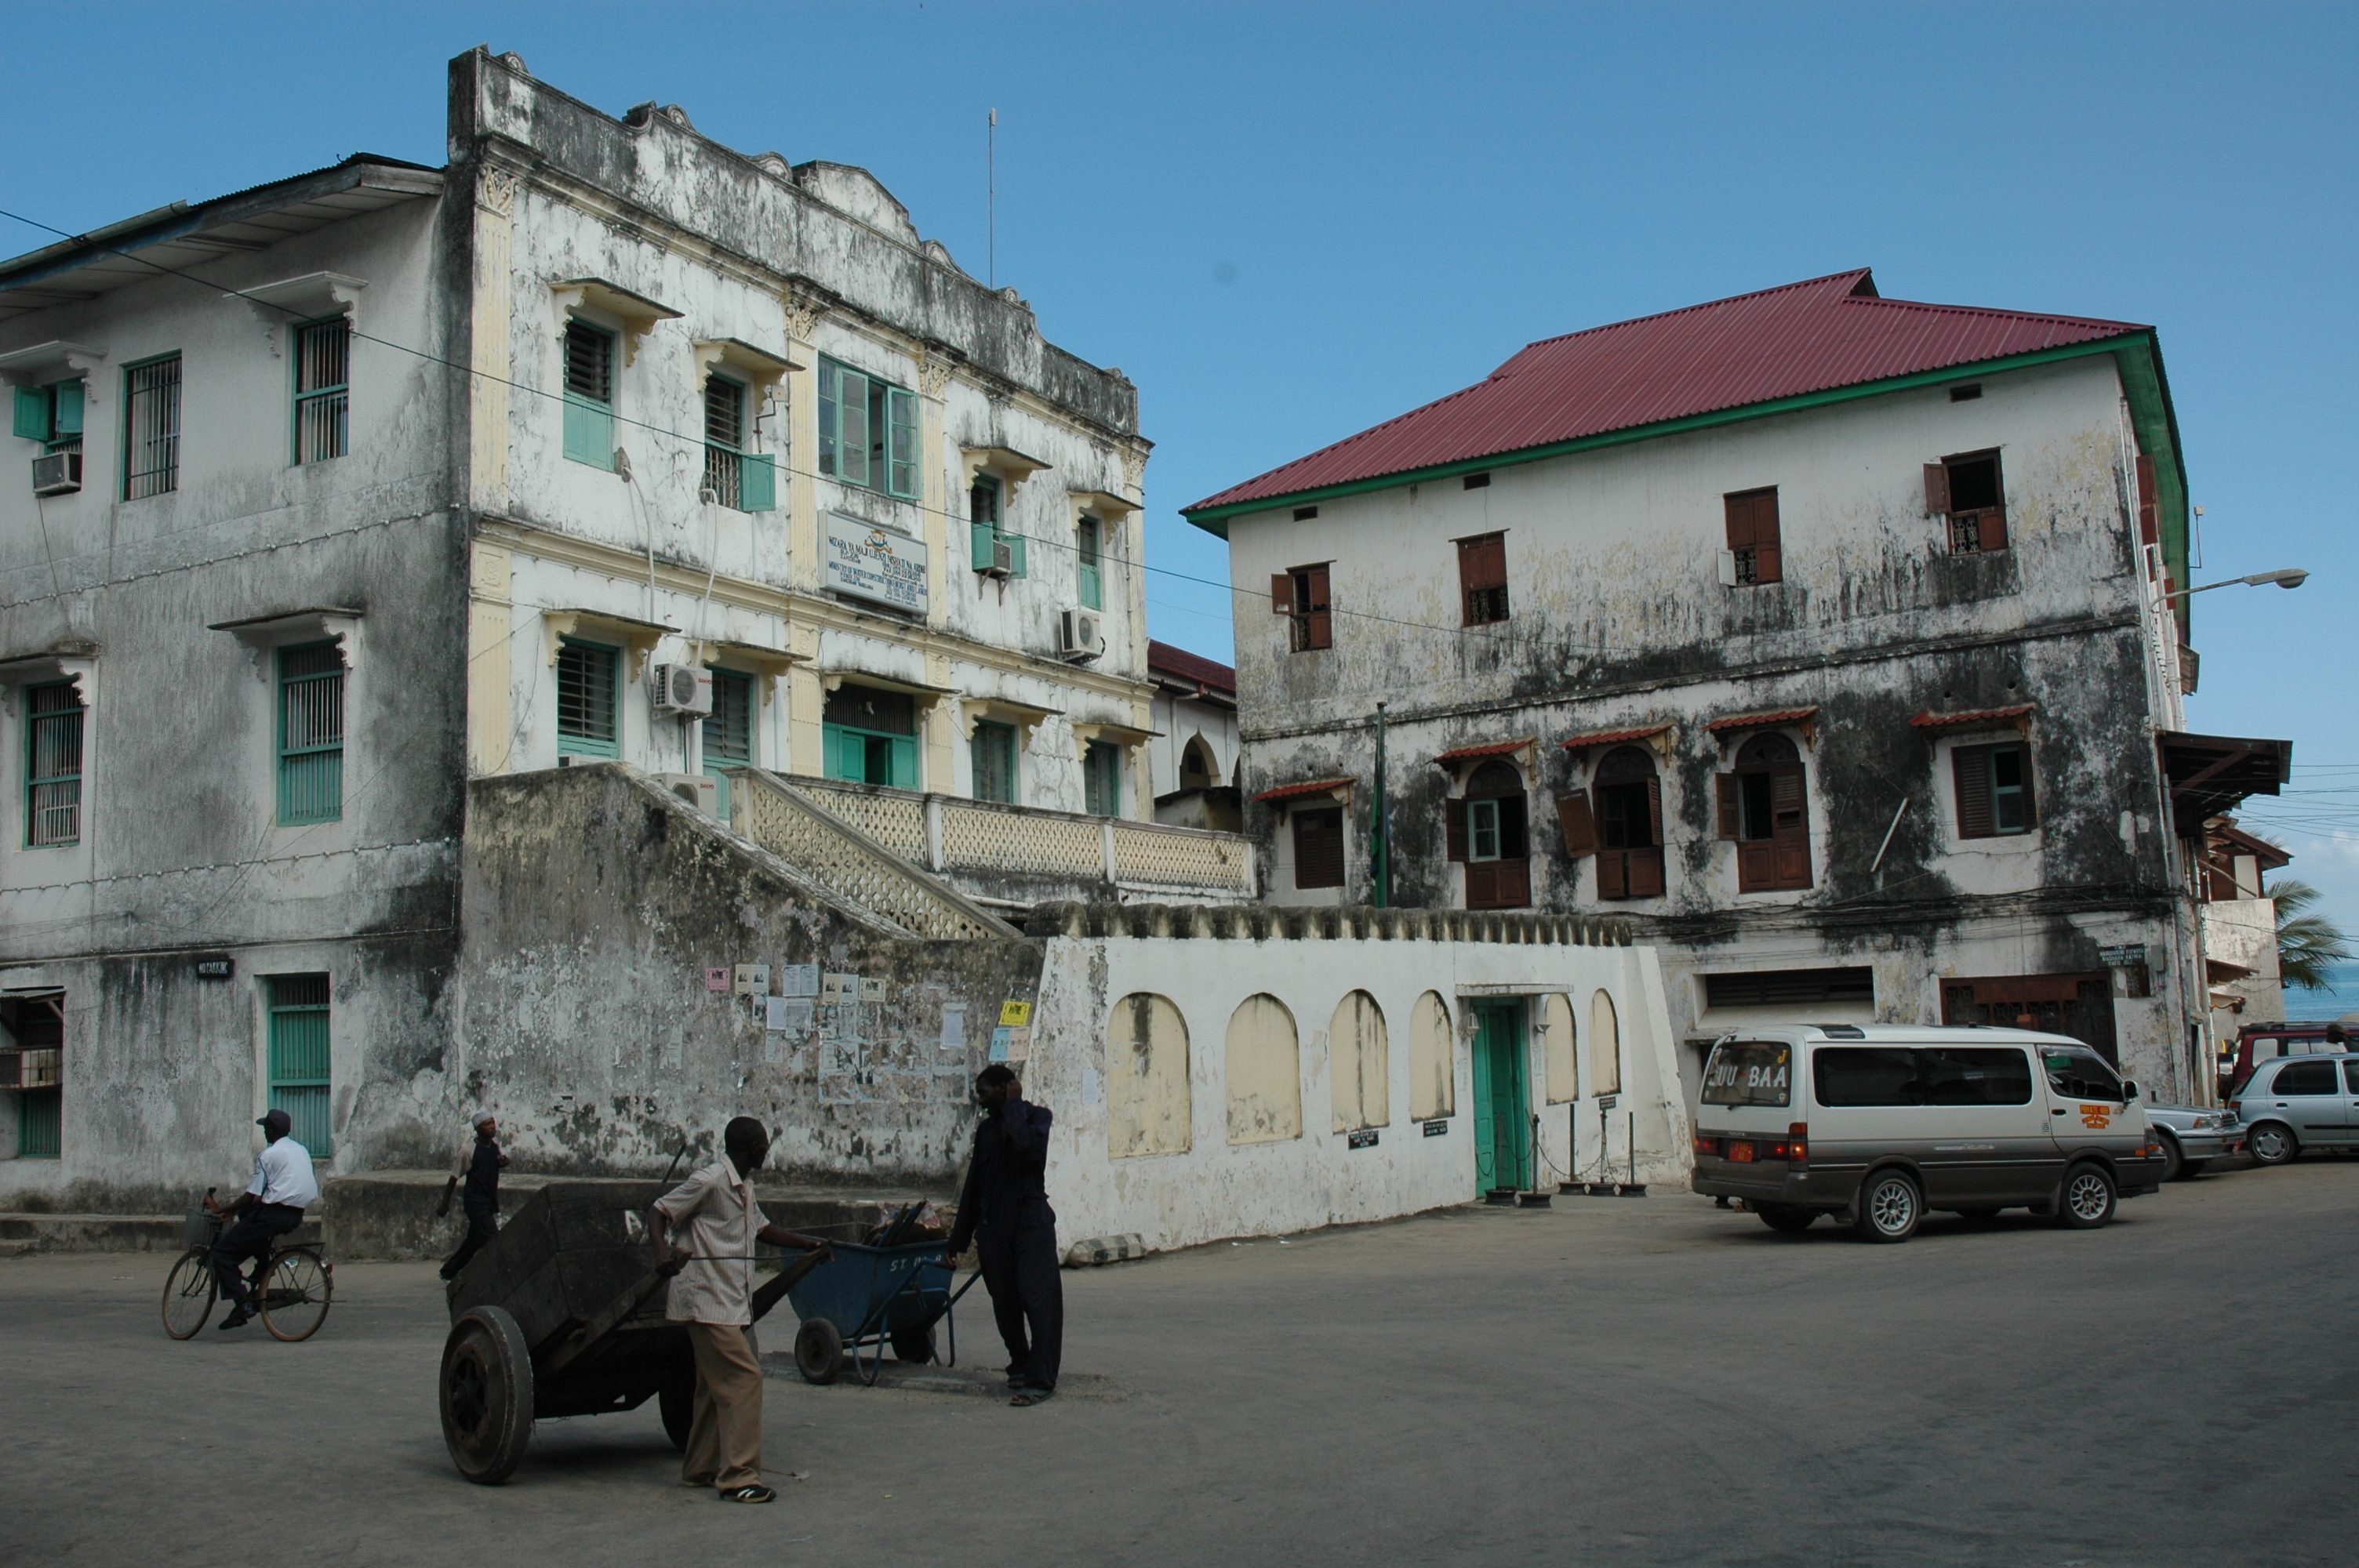 Stone_Town_of_Zanzibar-108834.jpg